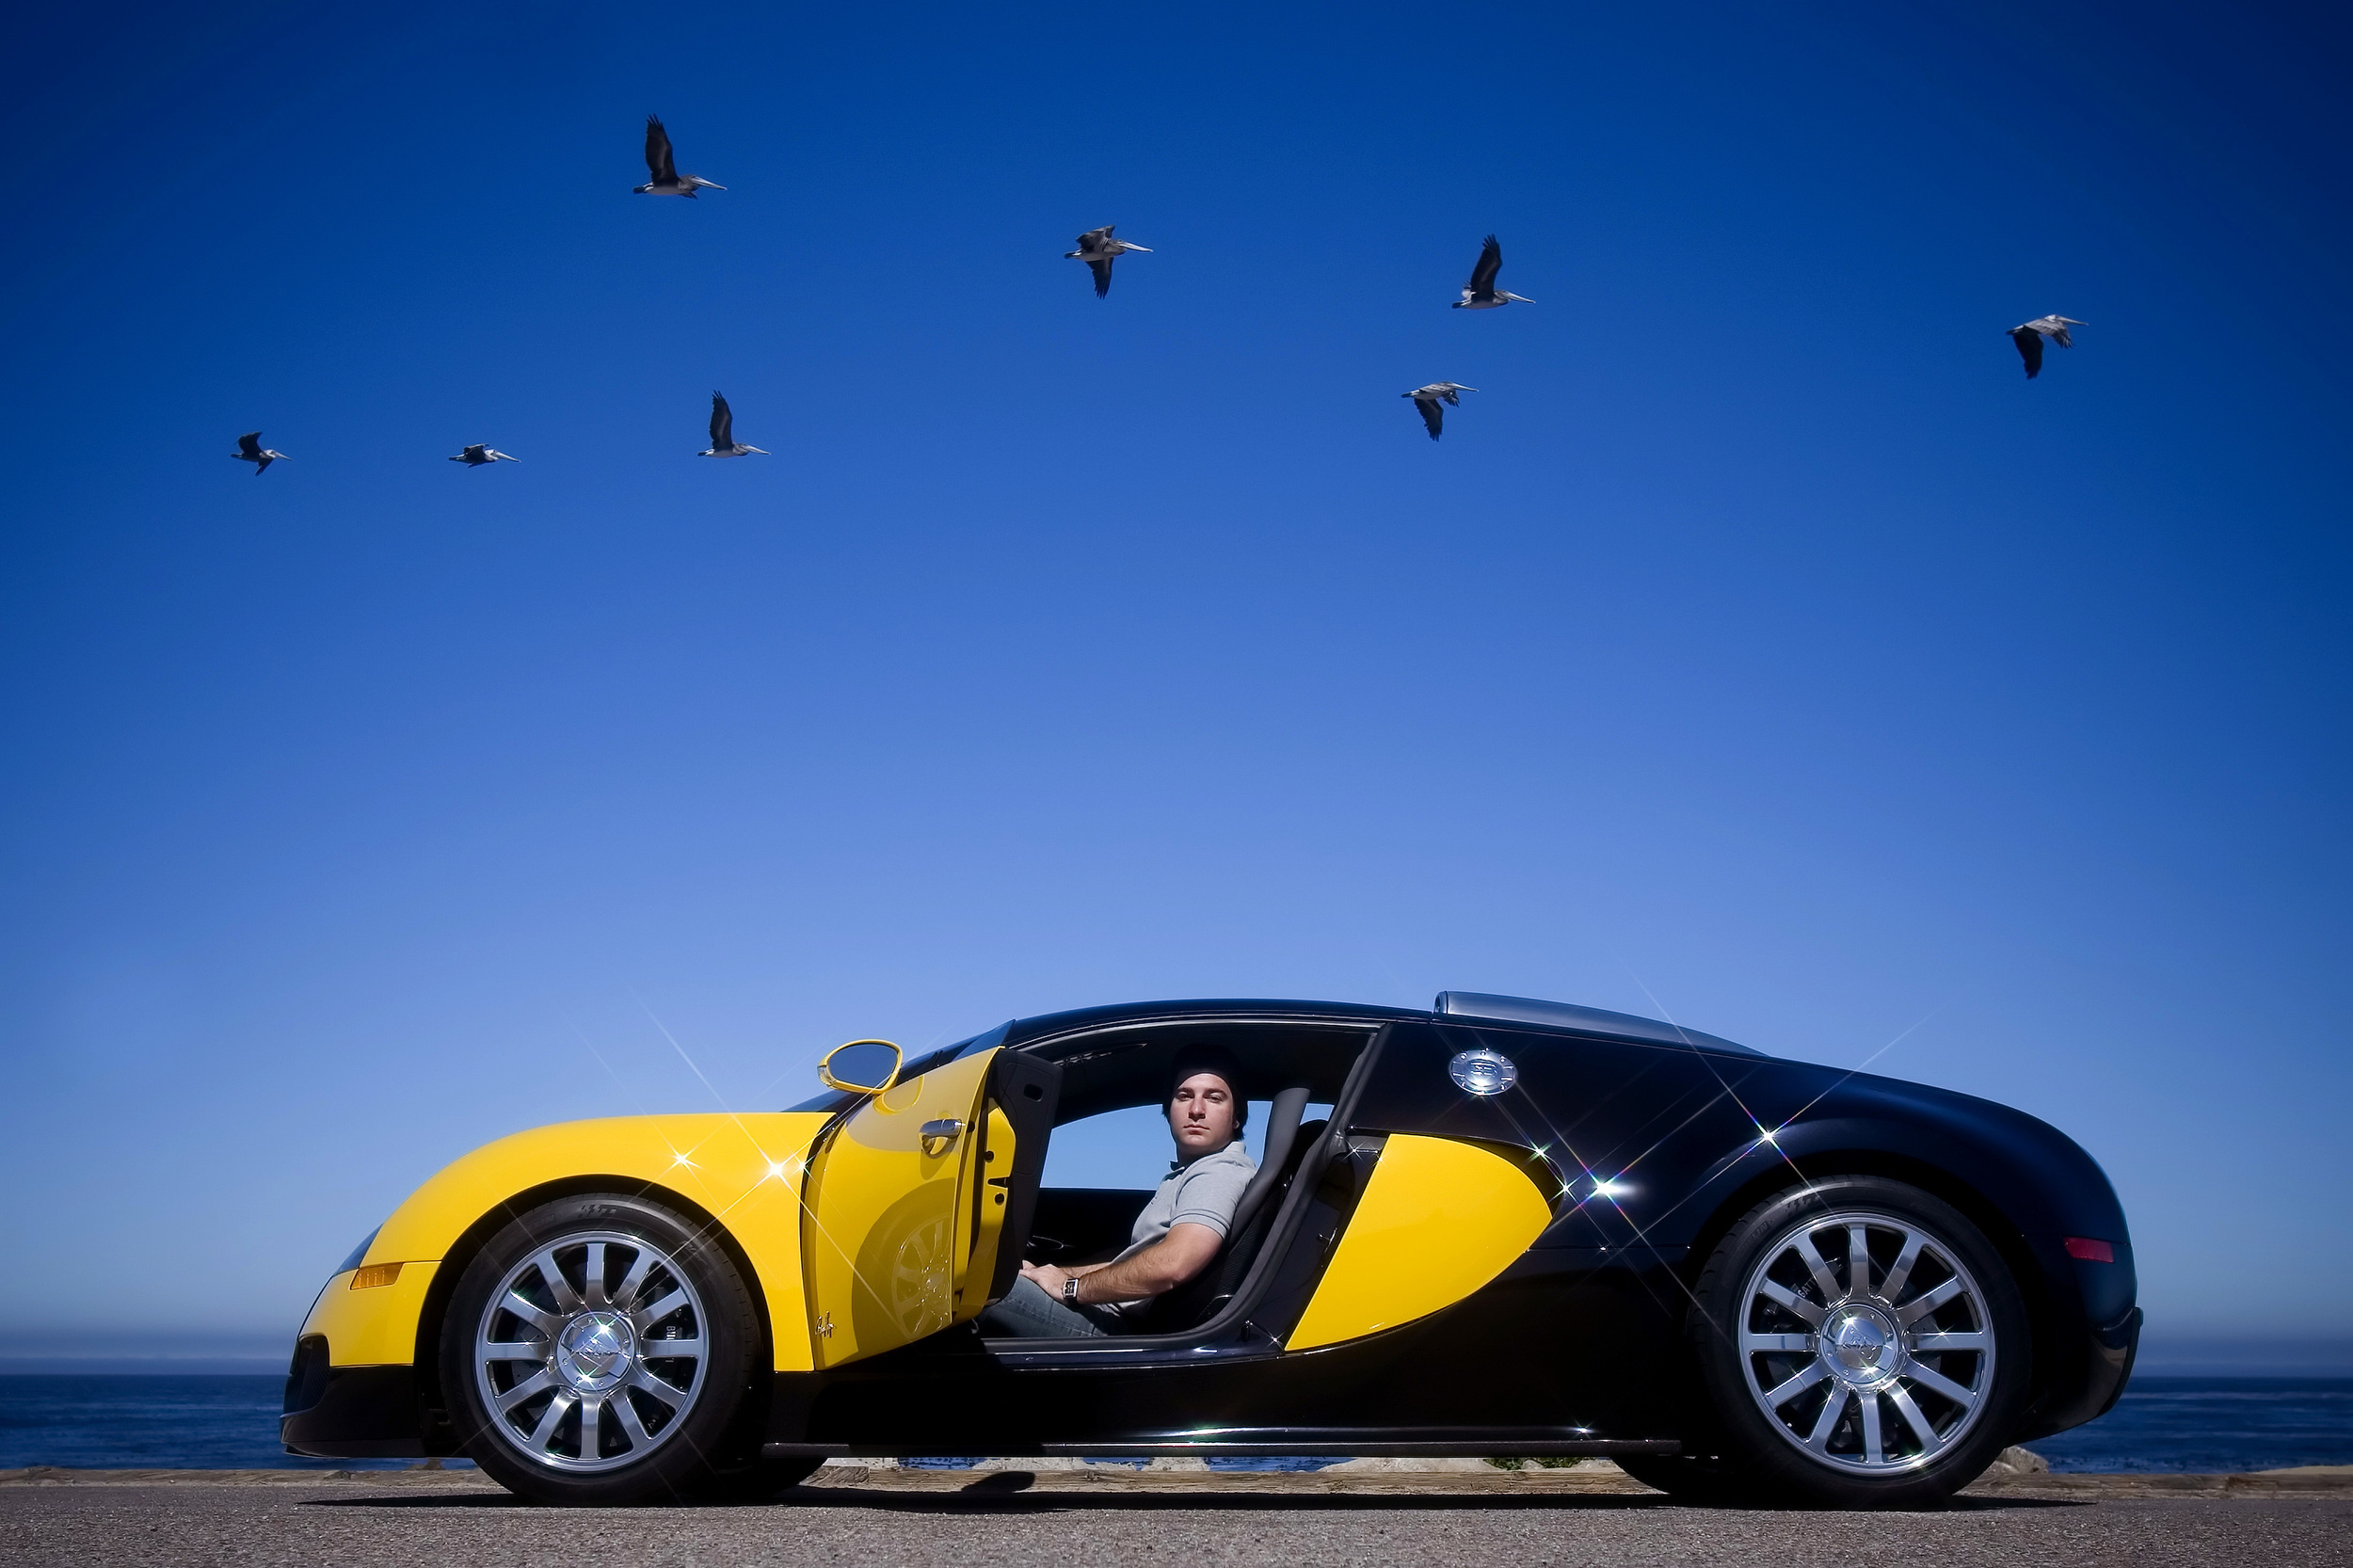   Stewart Schwartapfel / Bugatti Veyron - writer  